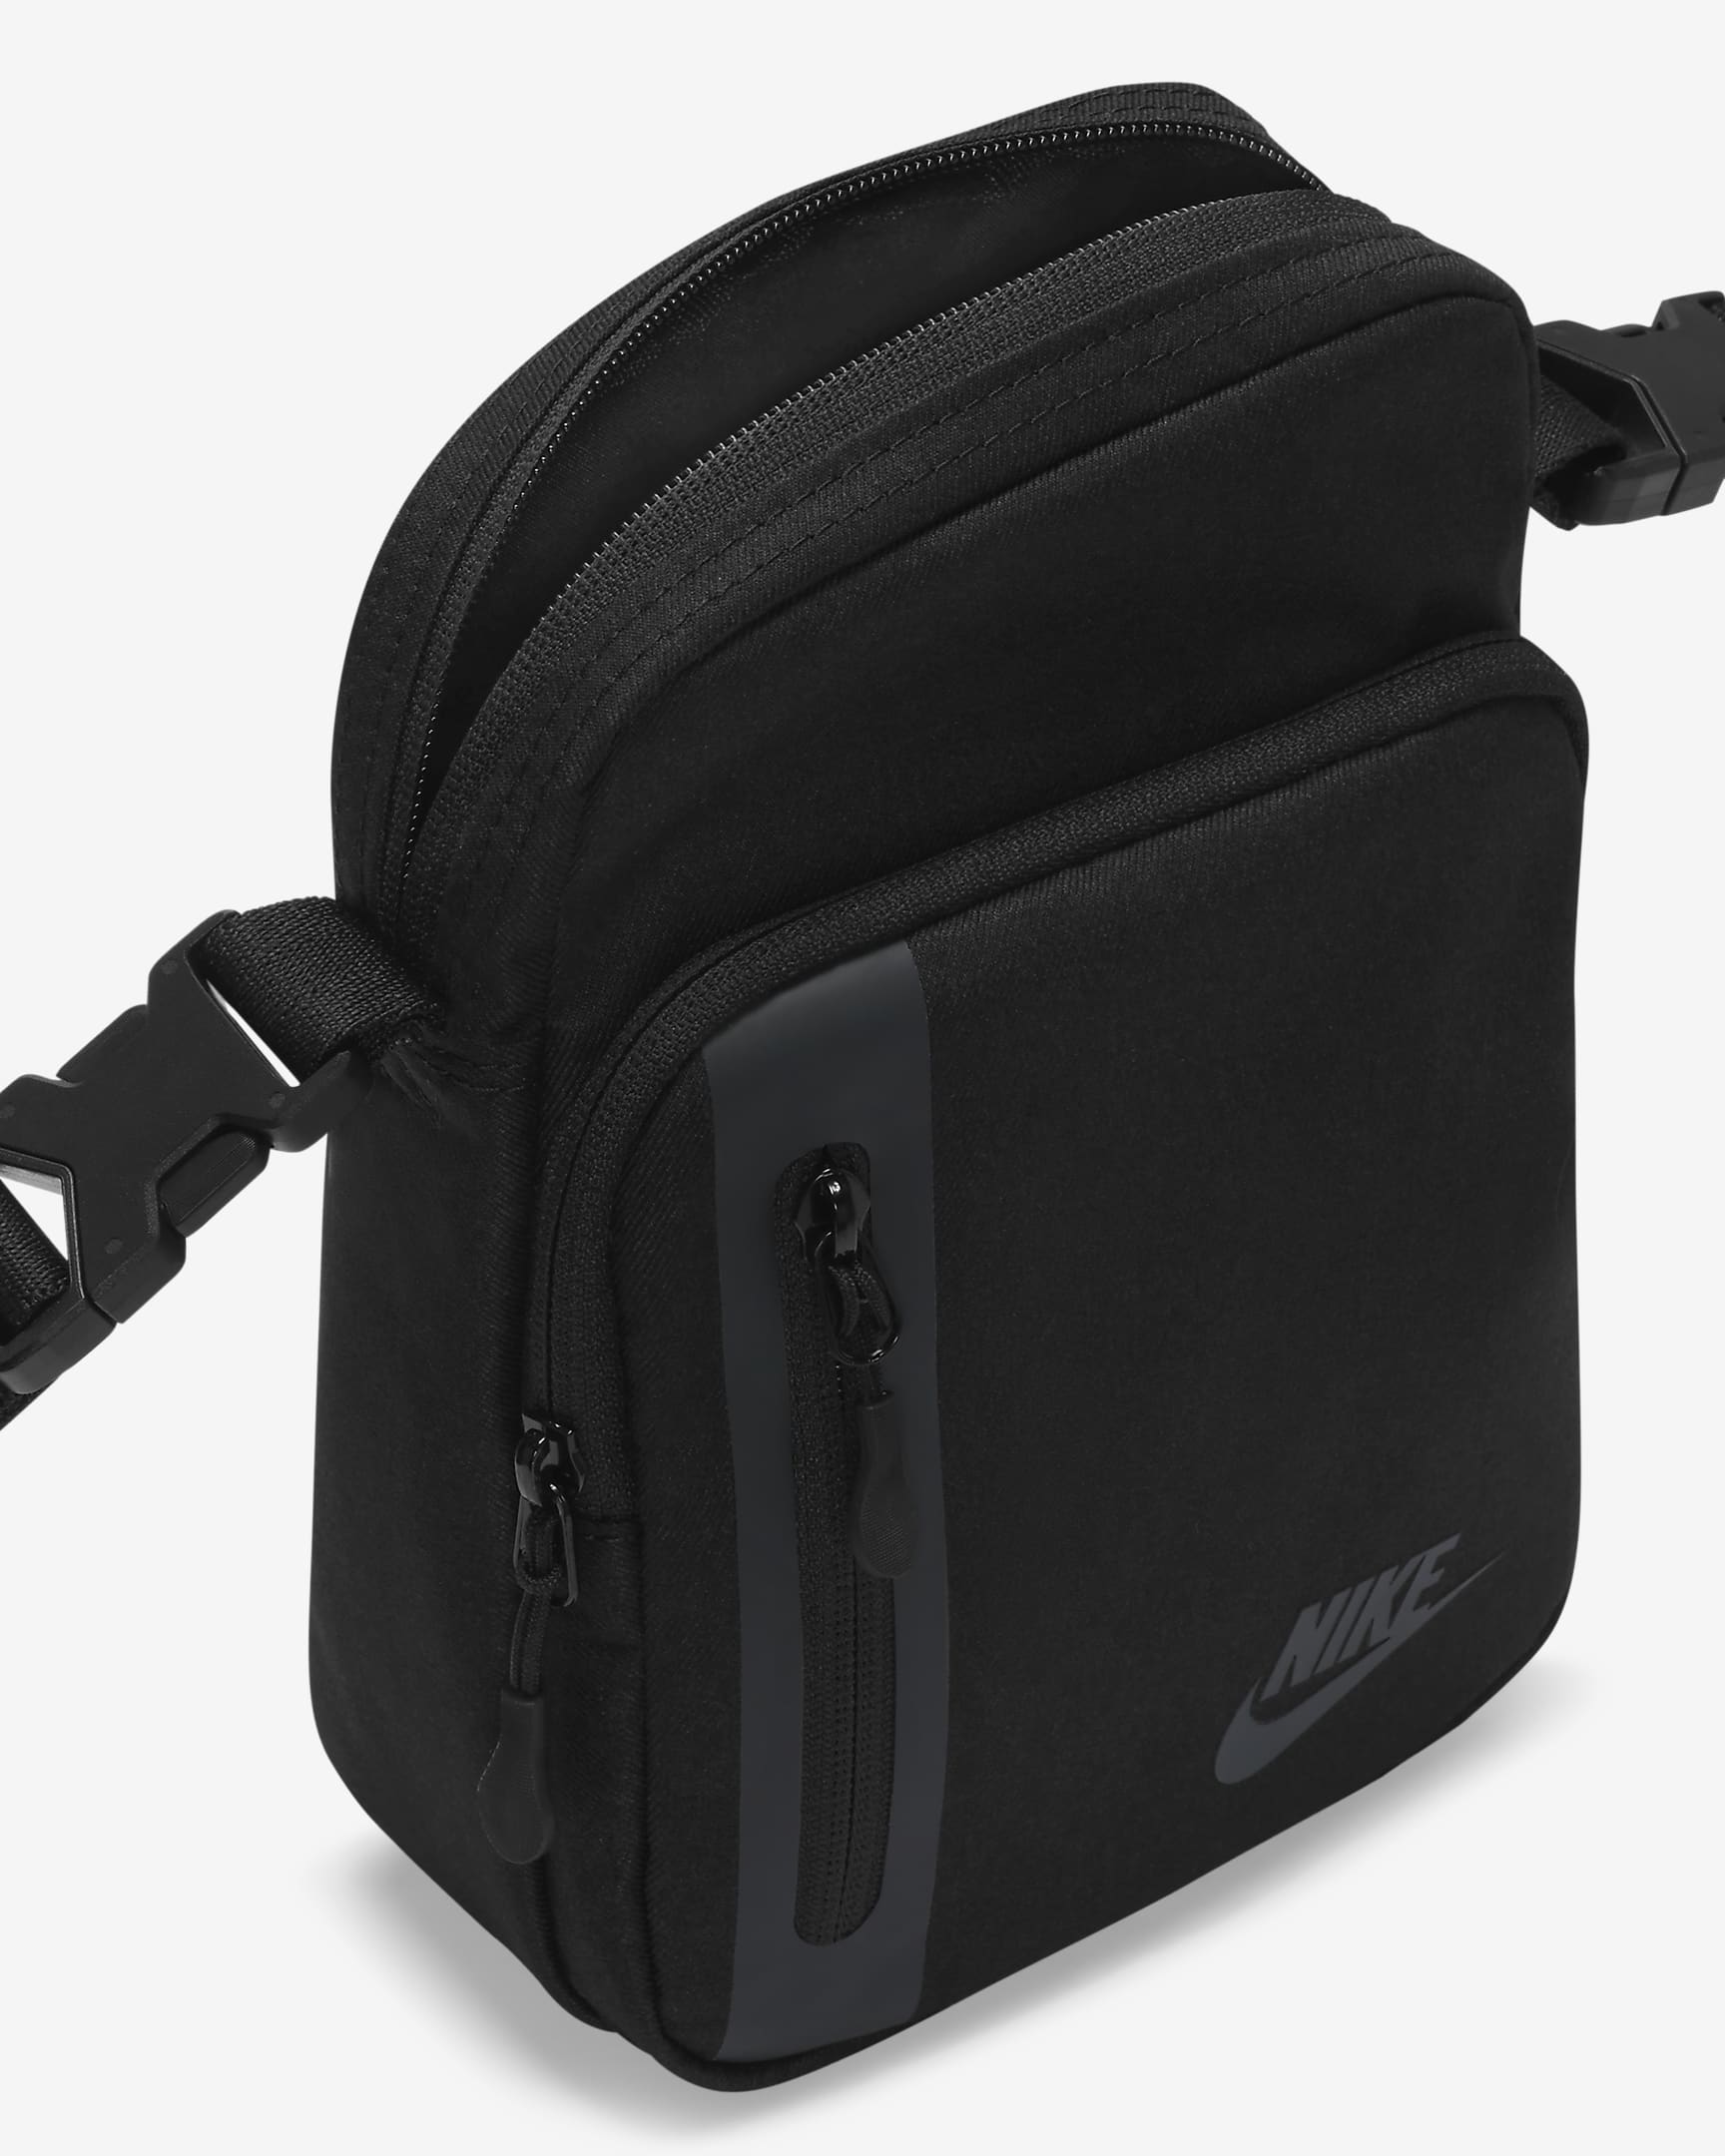 Nike Premium Crossbodytas (4 liter) - Zwart/Zwart/Anthracite